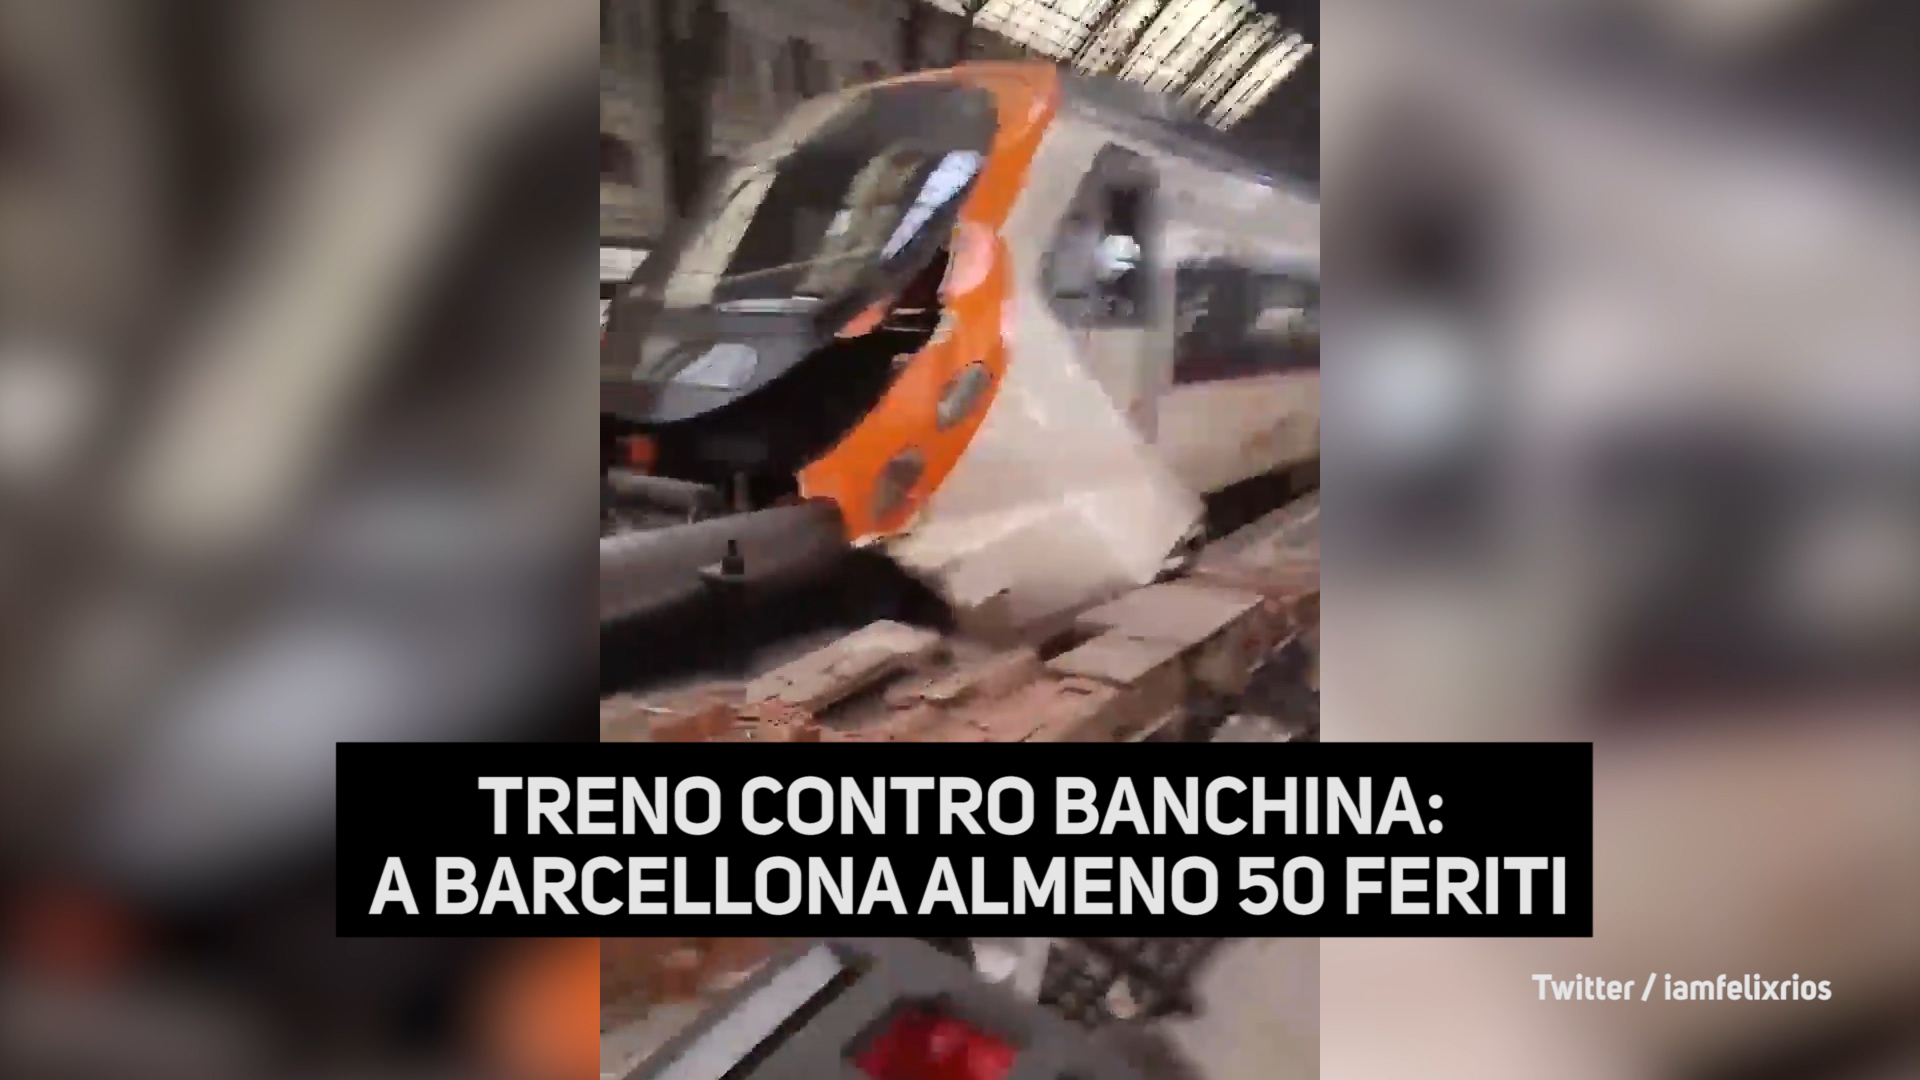 Treno contro banchina: a Barcellona almeno 50 feriti